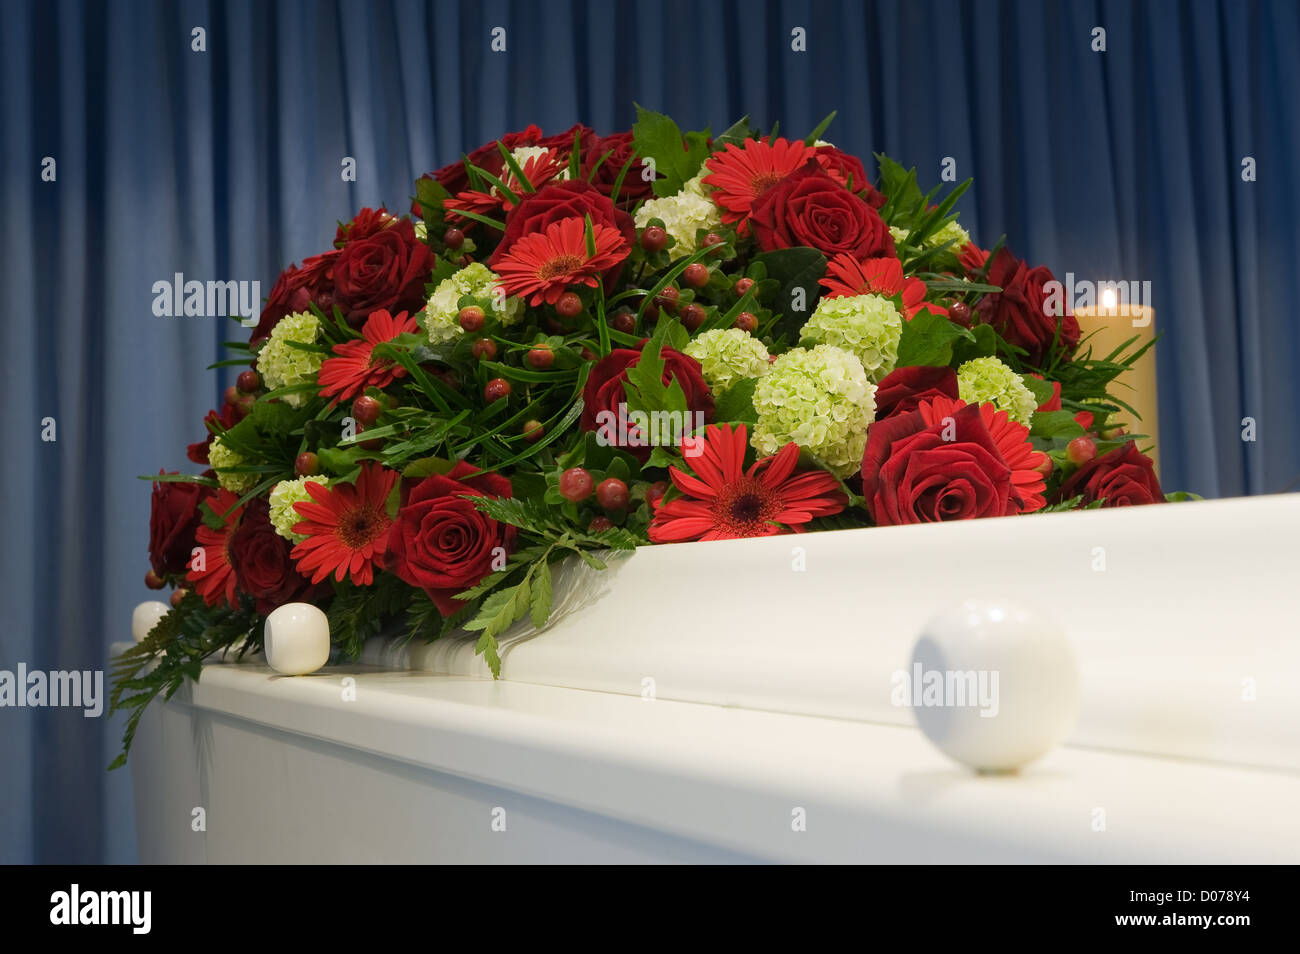 Una bara bianca in una camera mortuaria con una composizione floreale Foto Stock